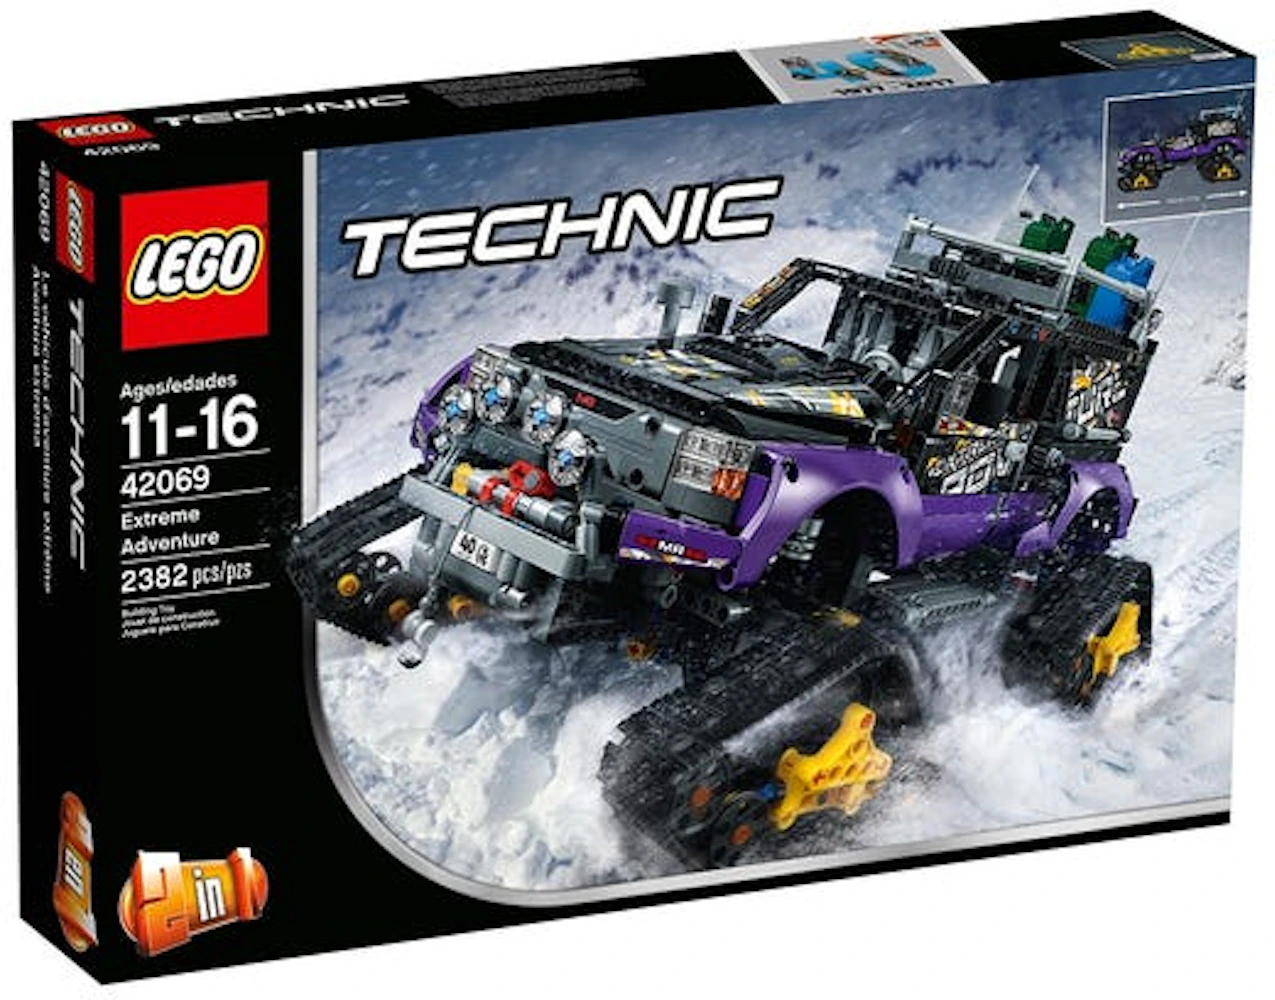 LEGO Technic Extreme 42069 - US